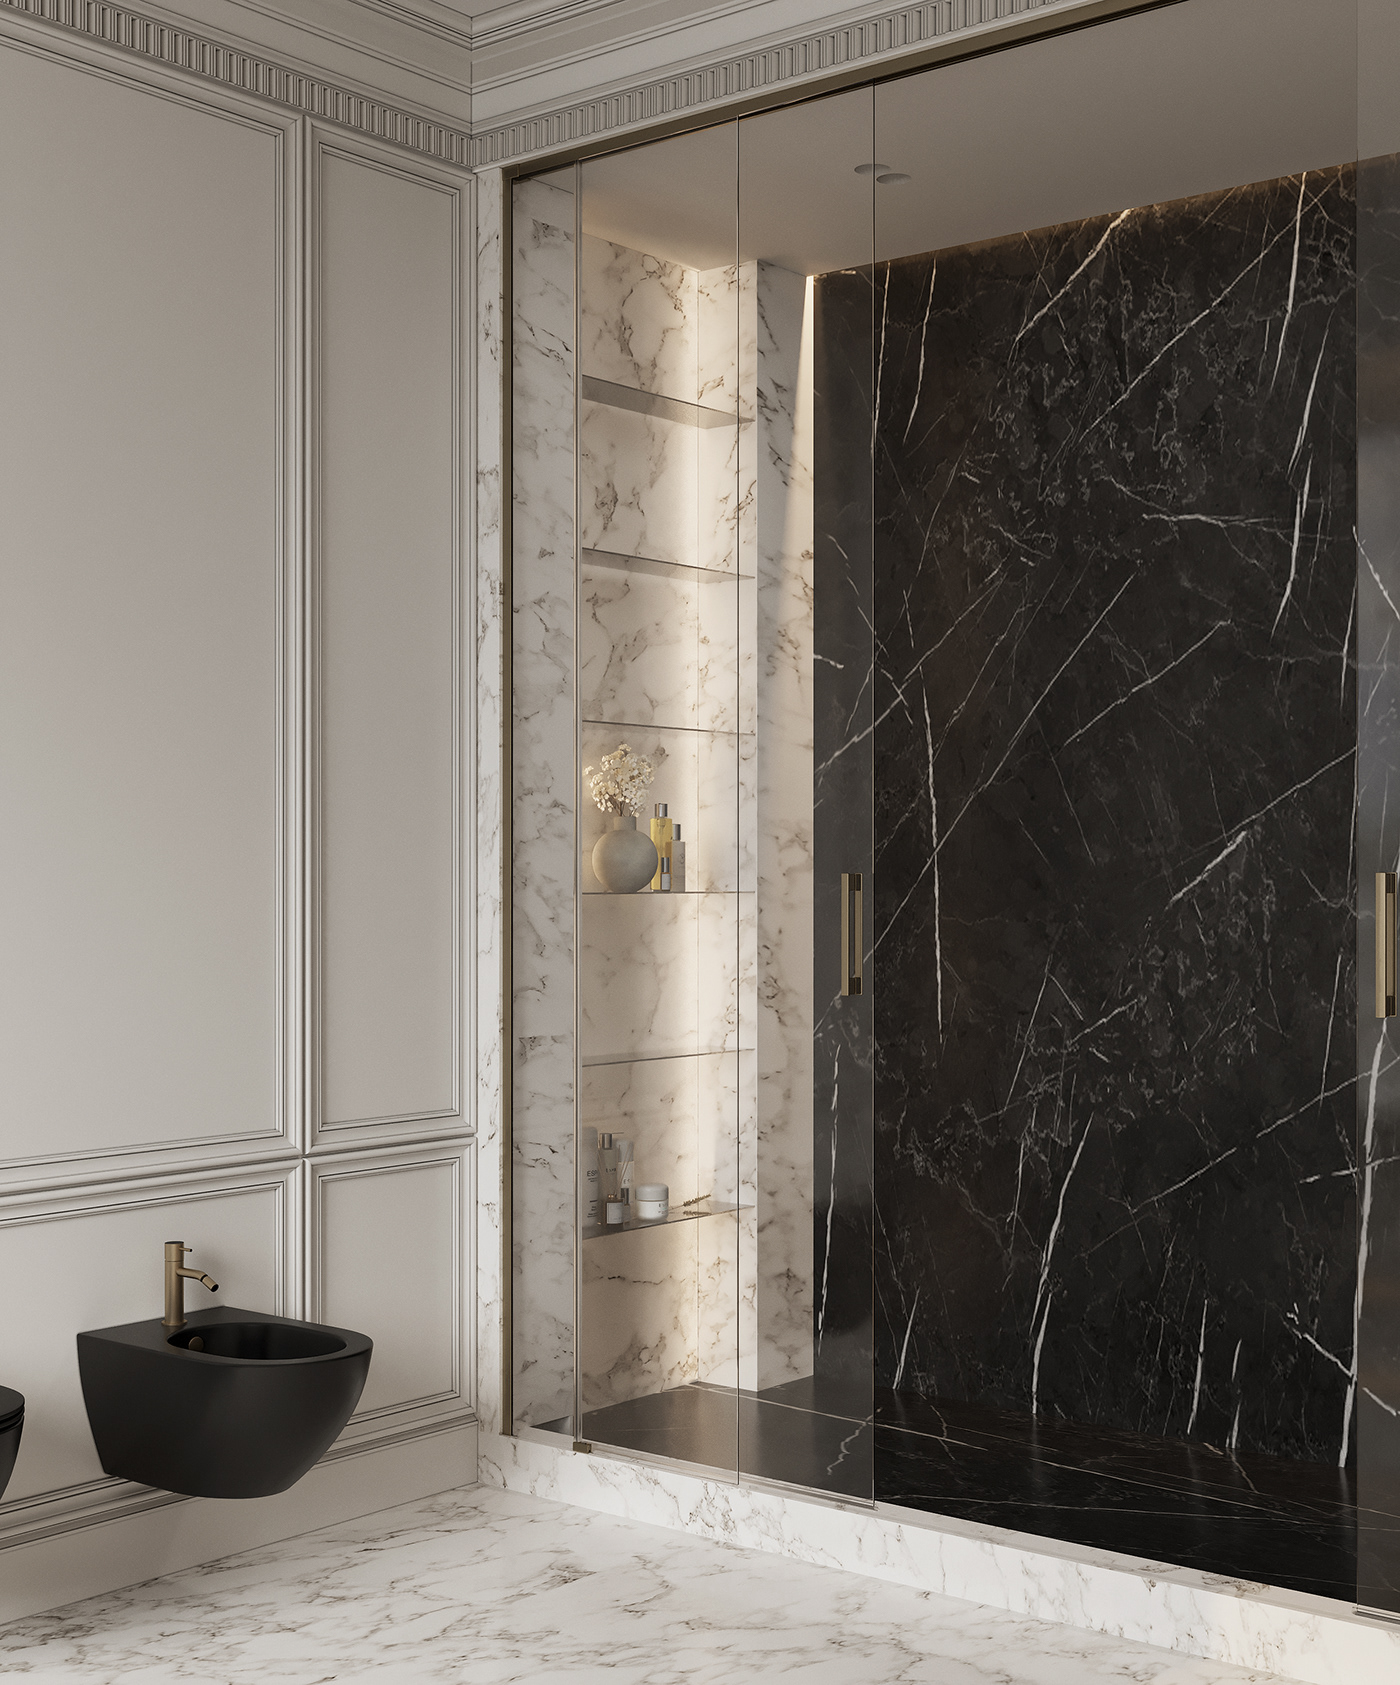 3D 3ds max bathroom interior design  Render visualization ванная дизайн интерьера интерьер Санузел